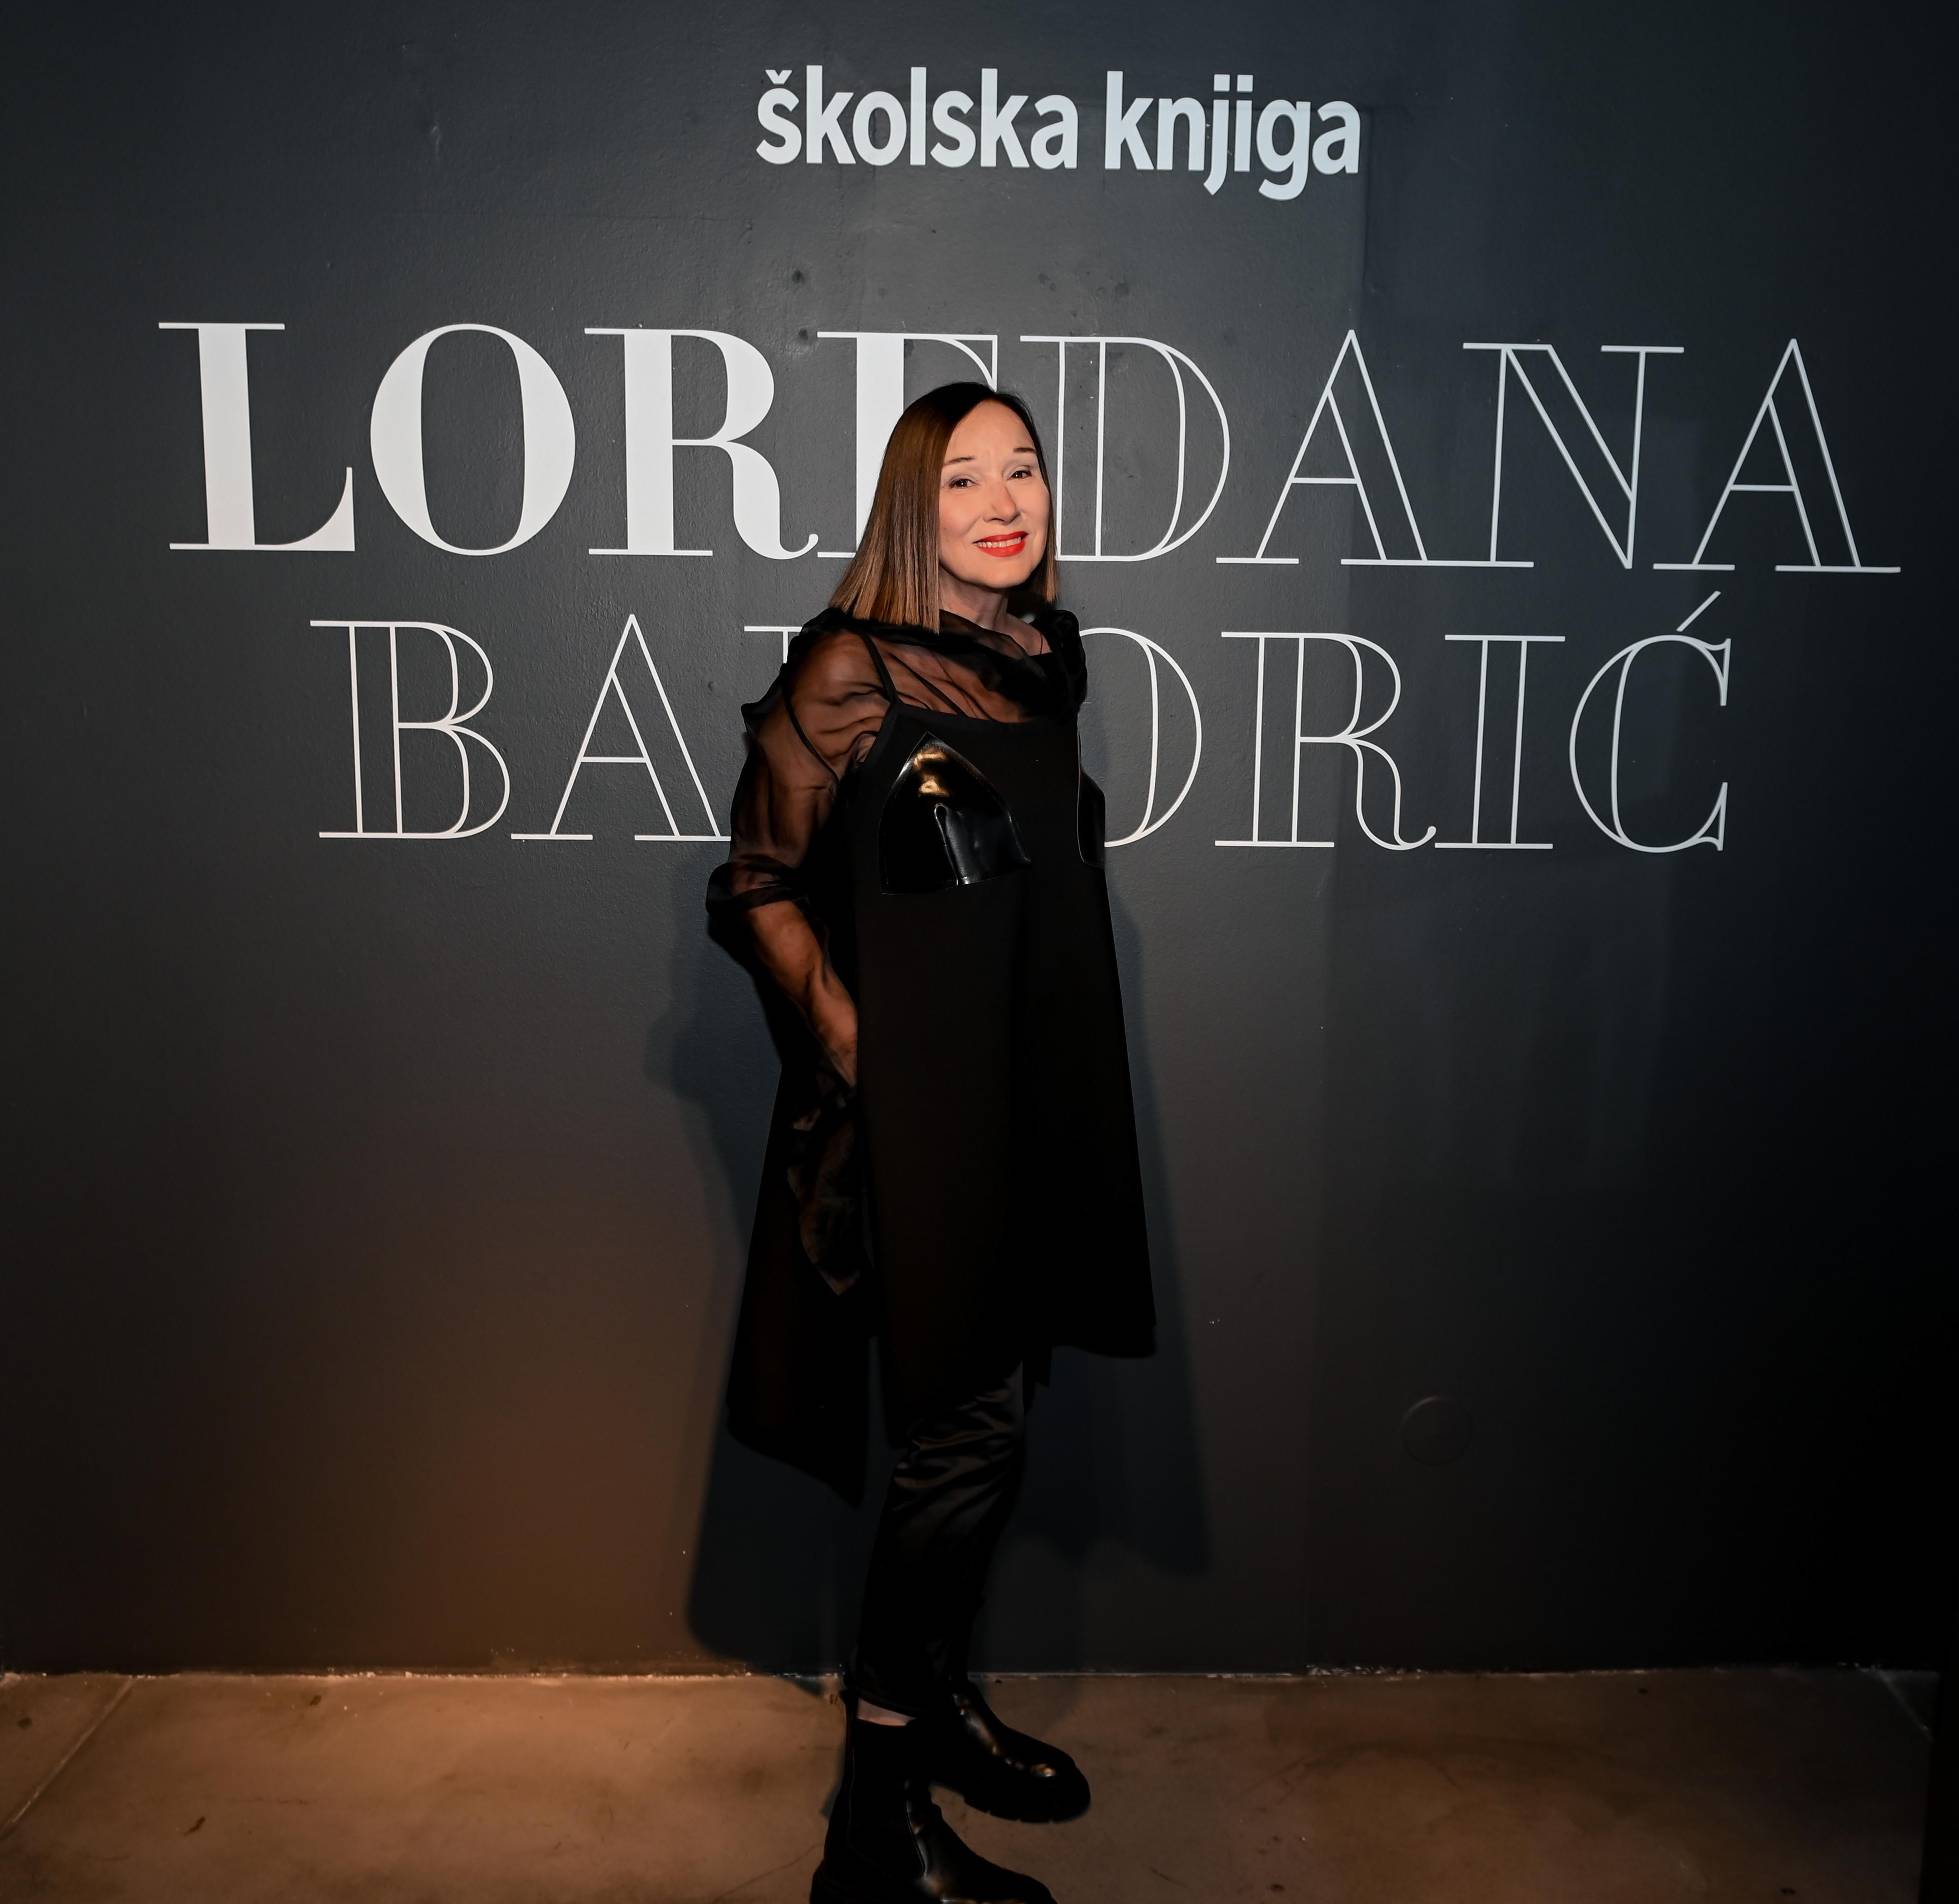 U Galeriji Kranjčar predstavljena monografija u luksuznom izdanju o jednoj od najvažnijih hrvatskih modnih dizajnerica